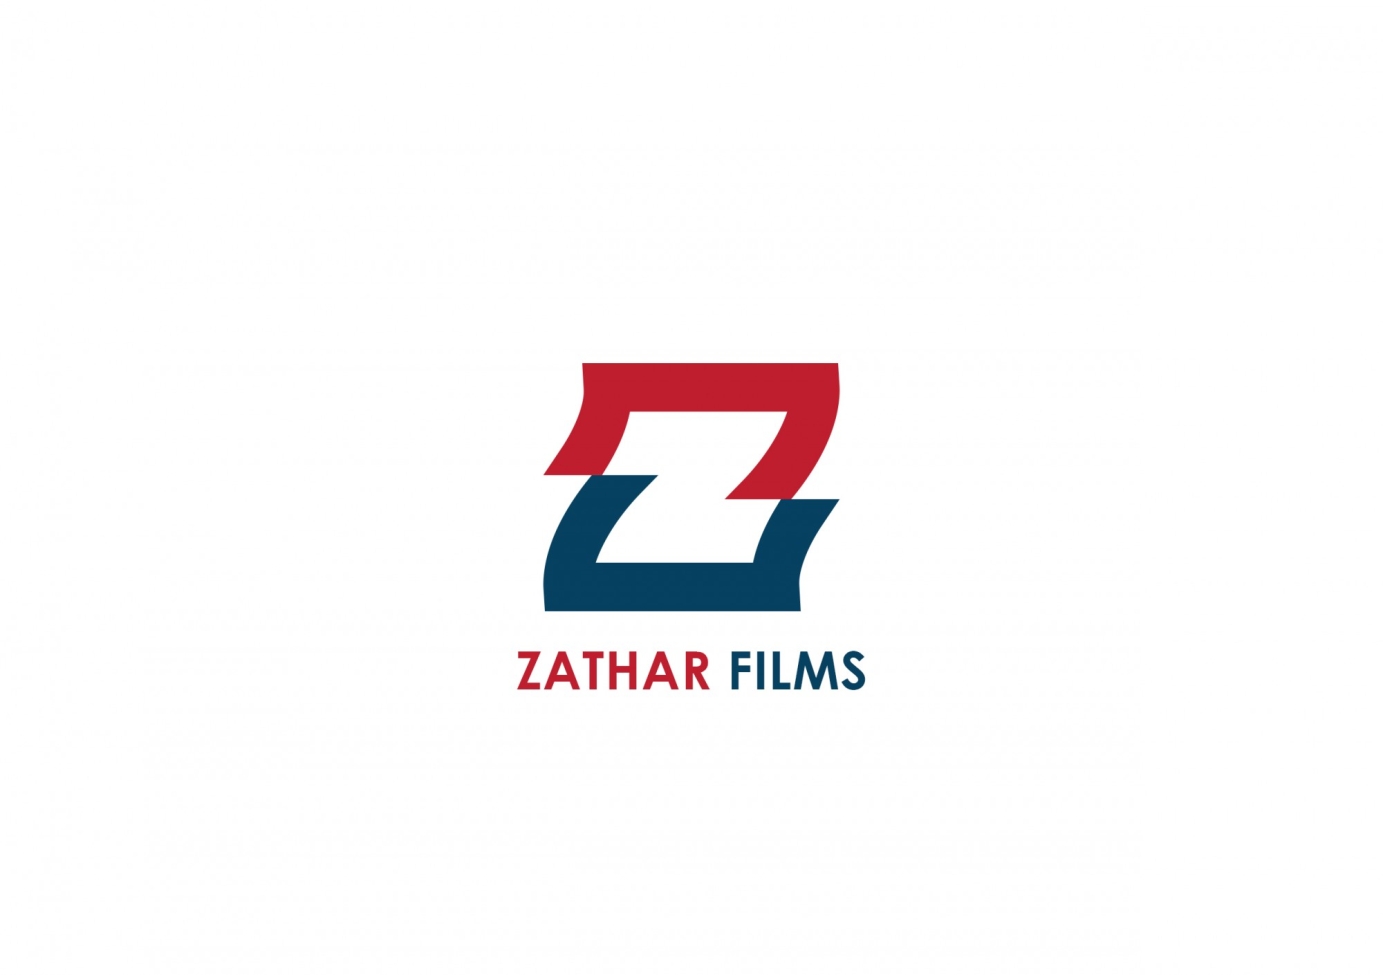 Zathar Films Brand design